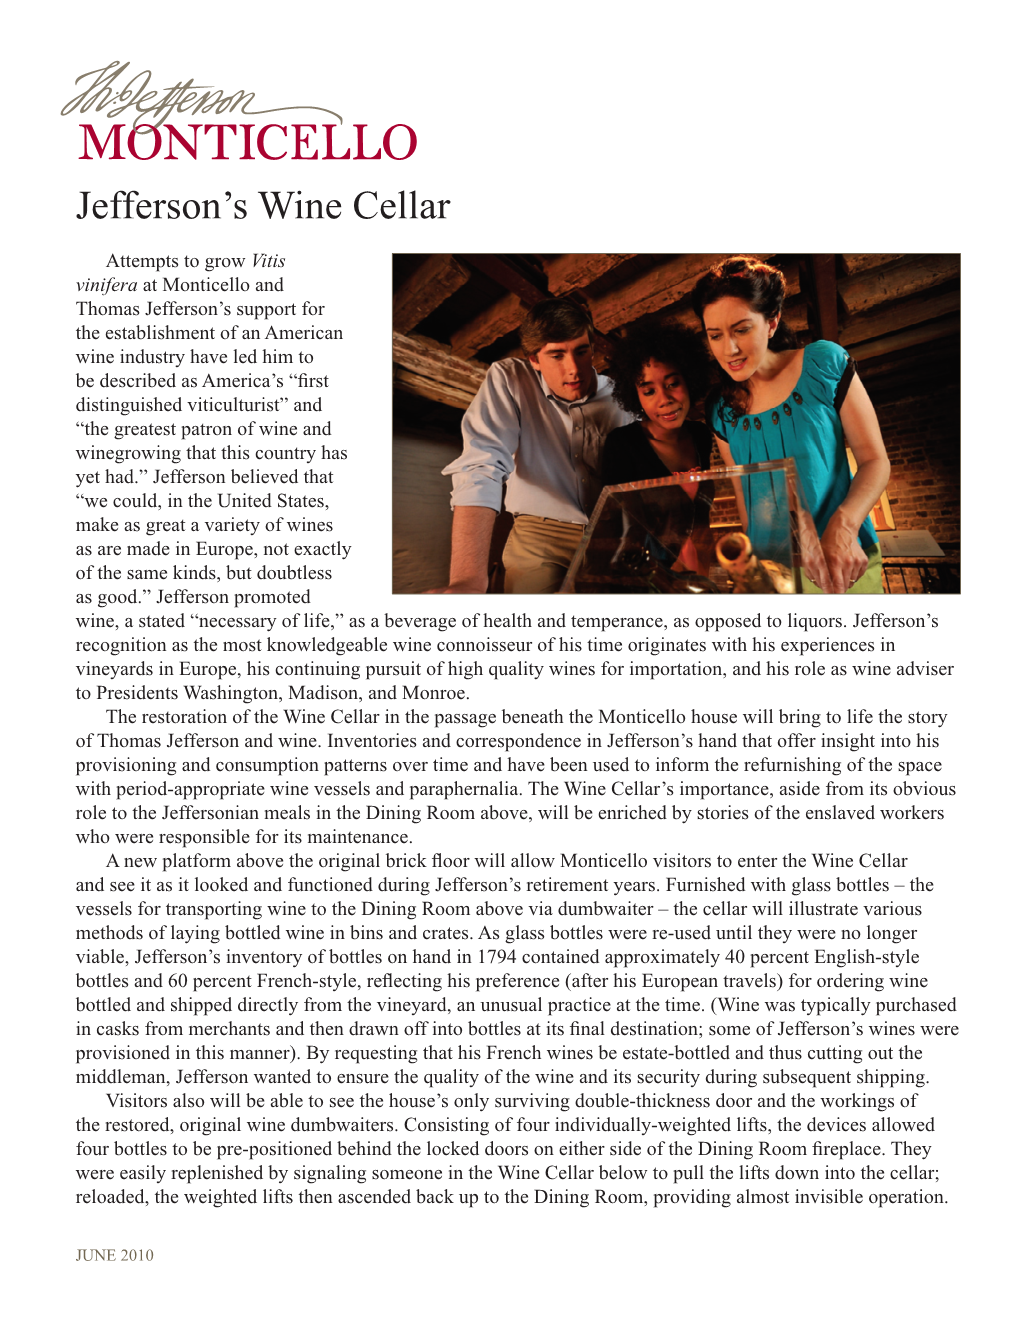 Thomas Jefferson's Wine Cellar